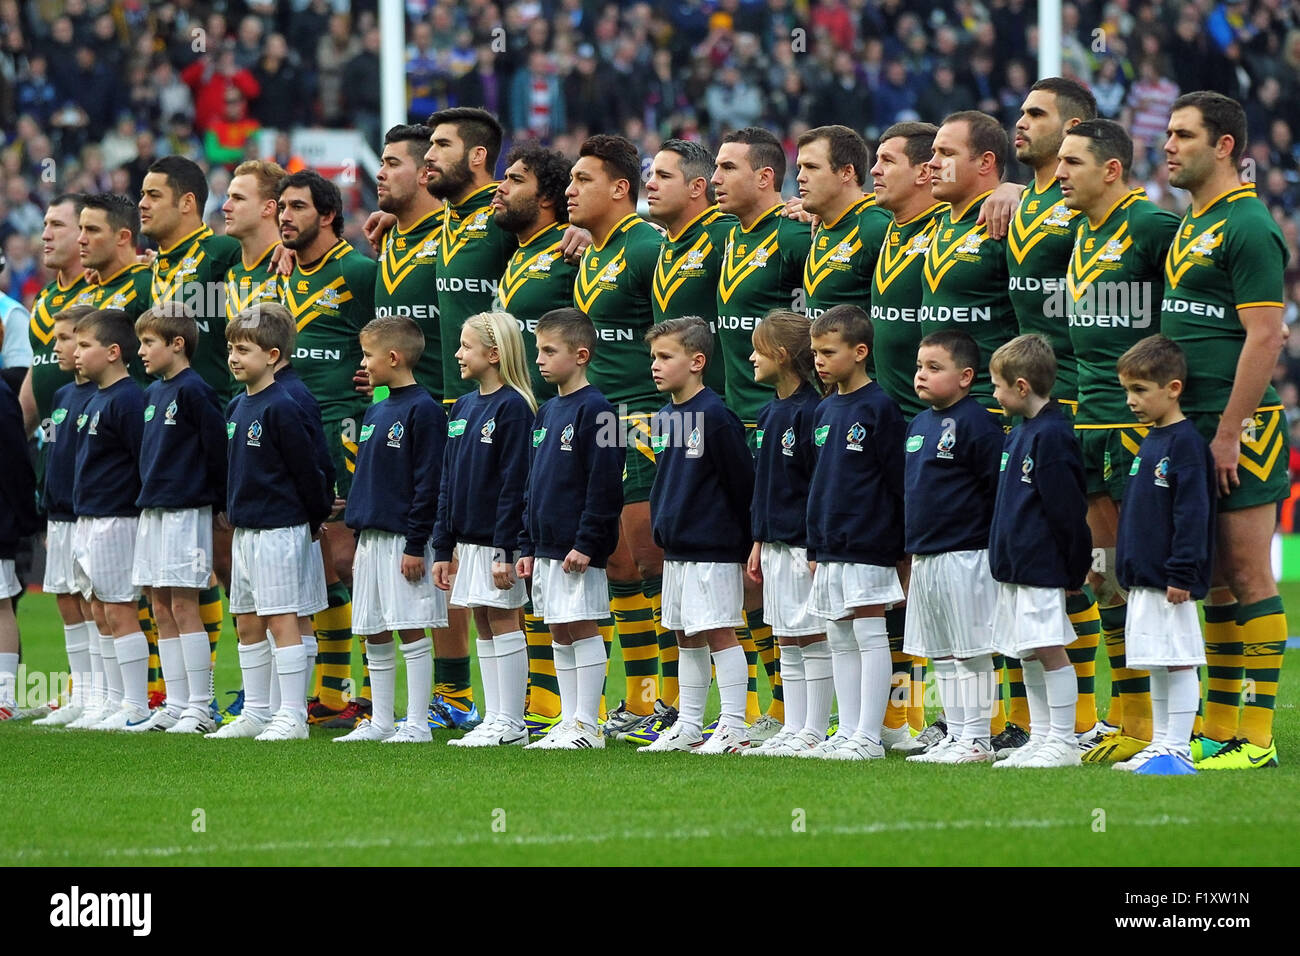 Lega di rugby australiana immagini e fotografie stock ad alta risoluzione -  Alamy